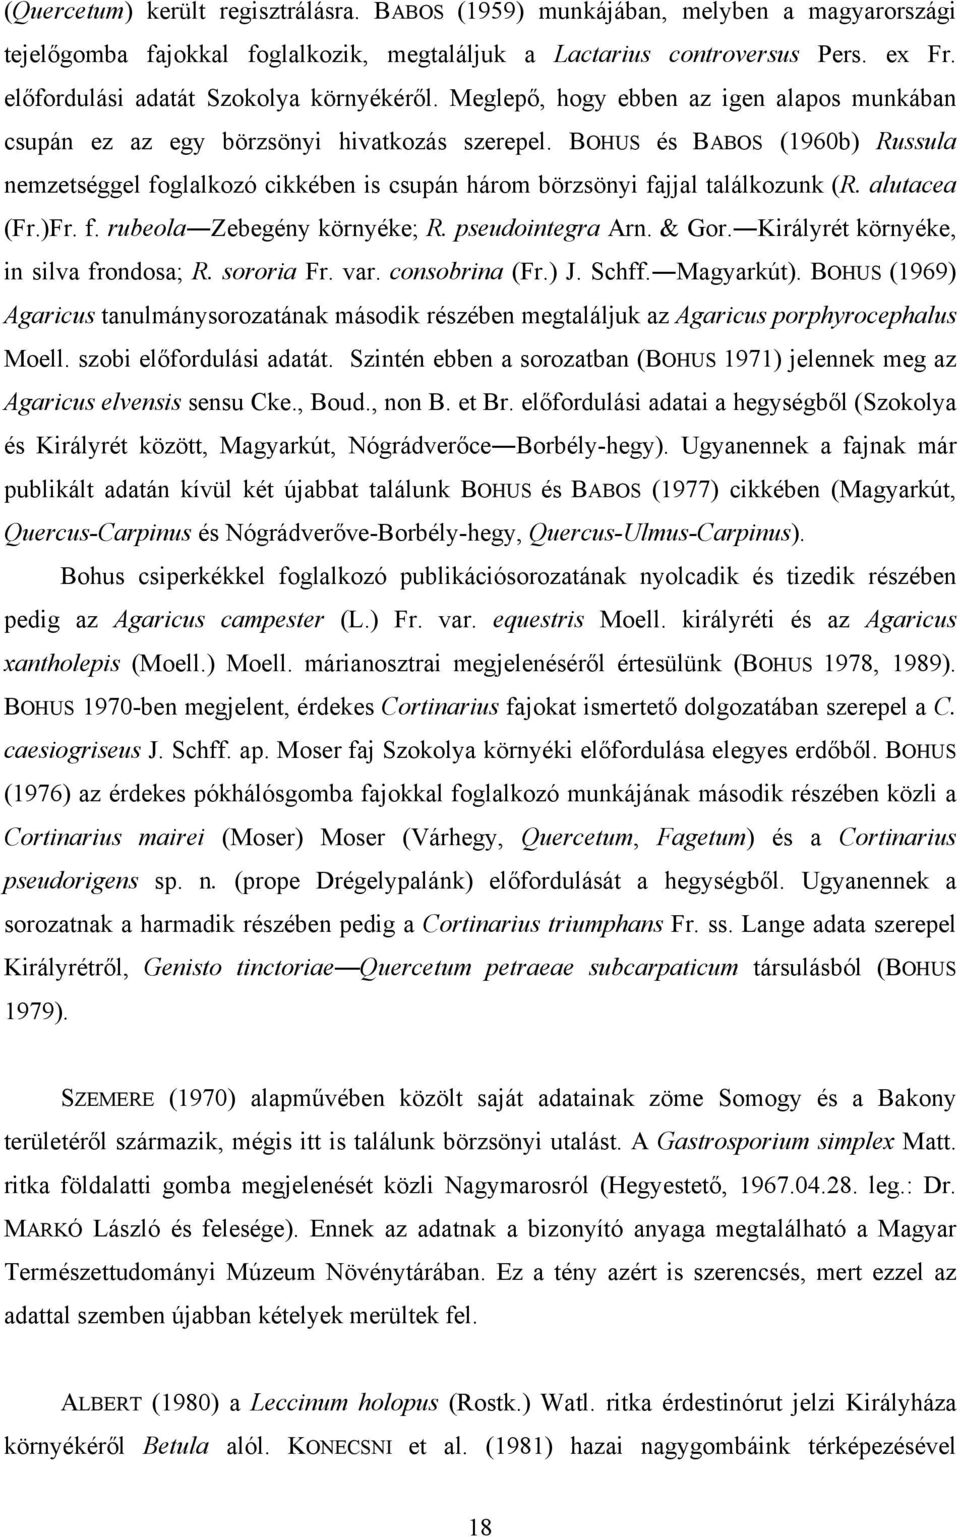 BOHUS és BABOS (1960b) Russula nemzetséggel foglalkozó cikkében is csupán három börzsönyi fajjal találkozunk (R. alutacea (Fr.)Fr. f. rubeola Zebegény környéke; R. pseudointegra Arn. & Gor.